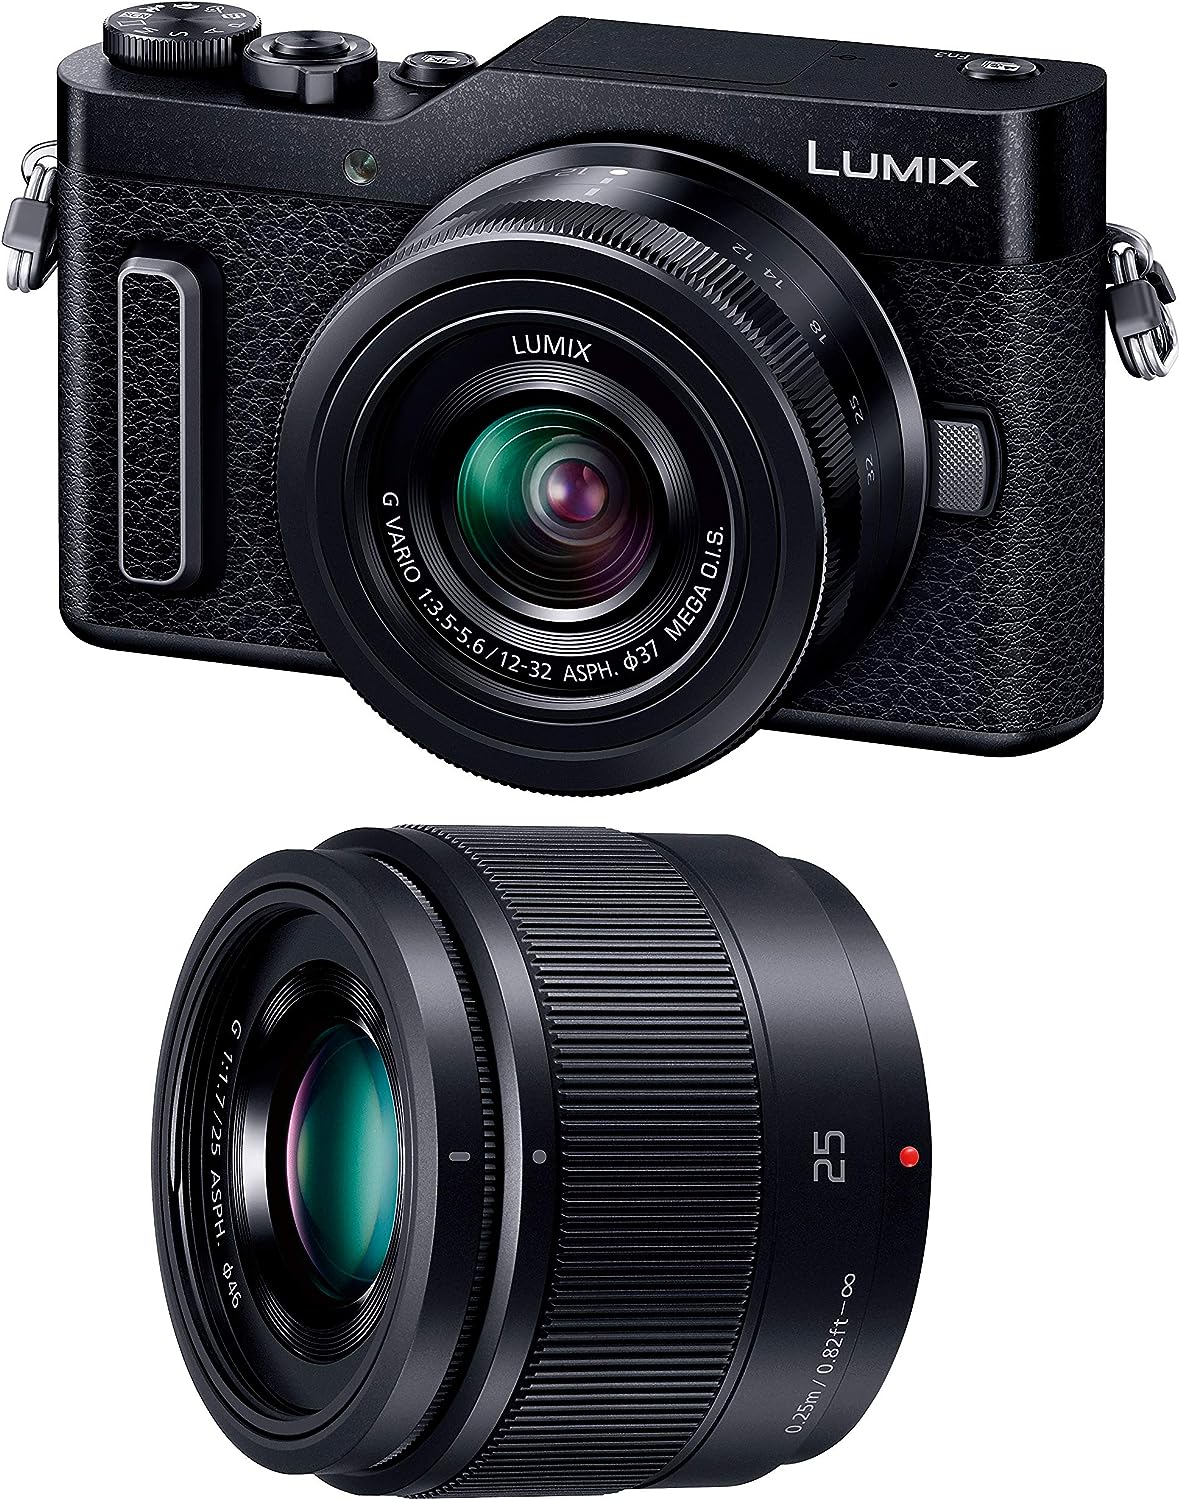 残り在庫1台 Panasonic LUMIX ミラーレス一眼カメラ DC-GF90W-K ルミックス GF90 ダブルレンズキット 標準ズームレンズ/単焦点レンズ付属 ブラック デジカメ パナソニック